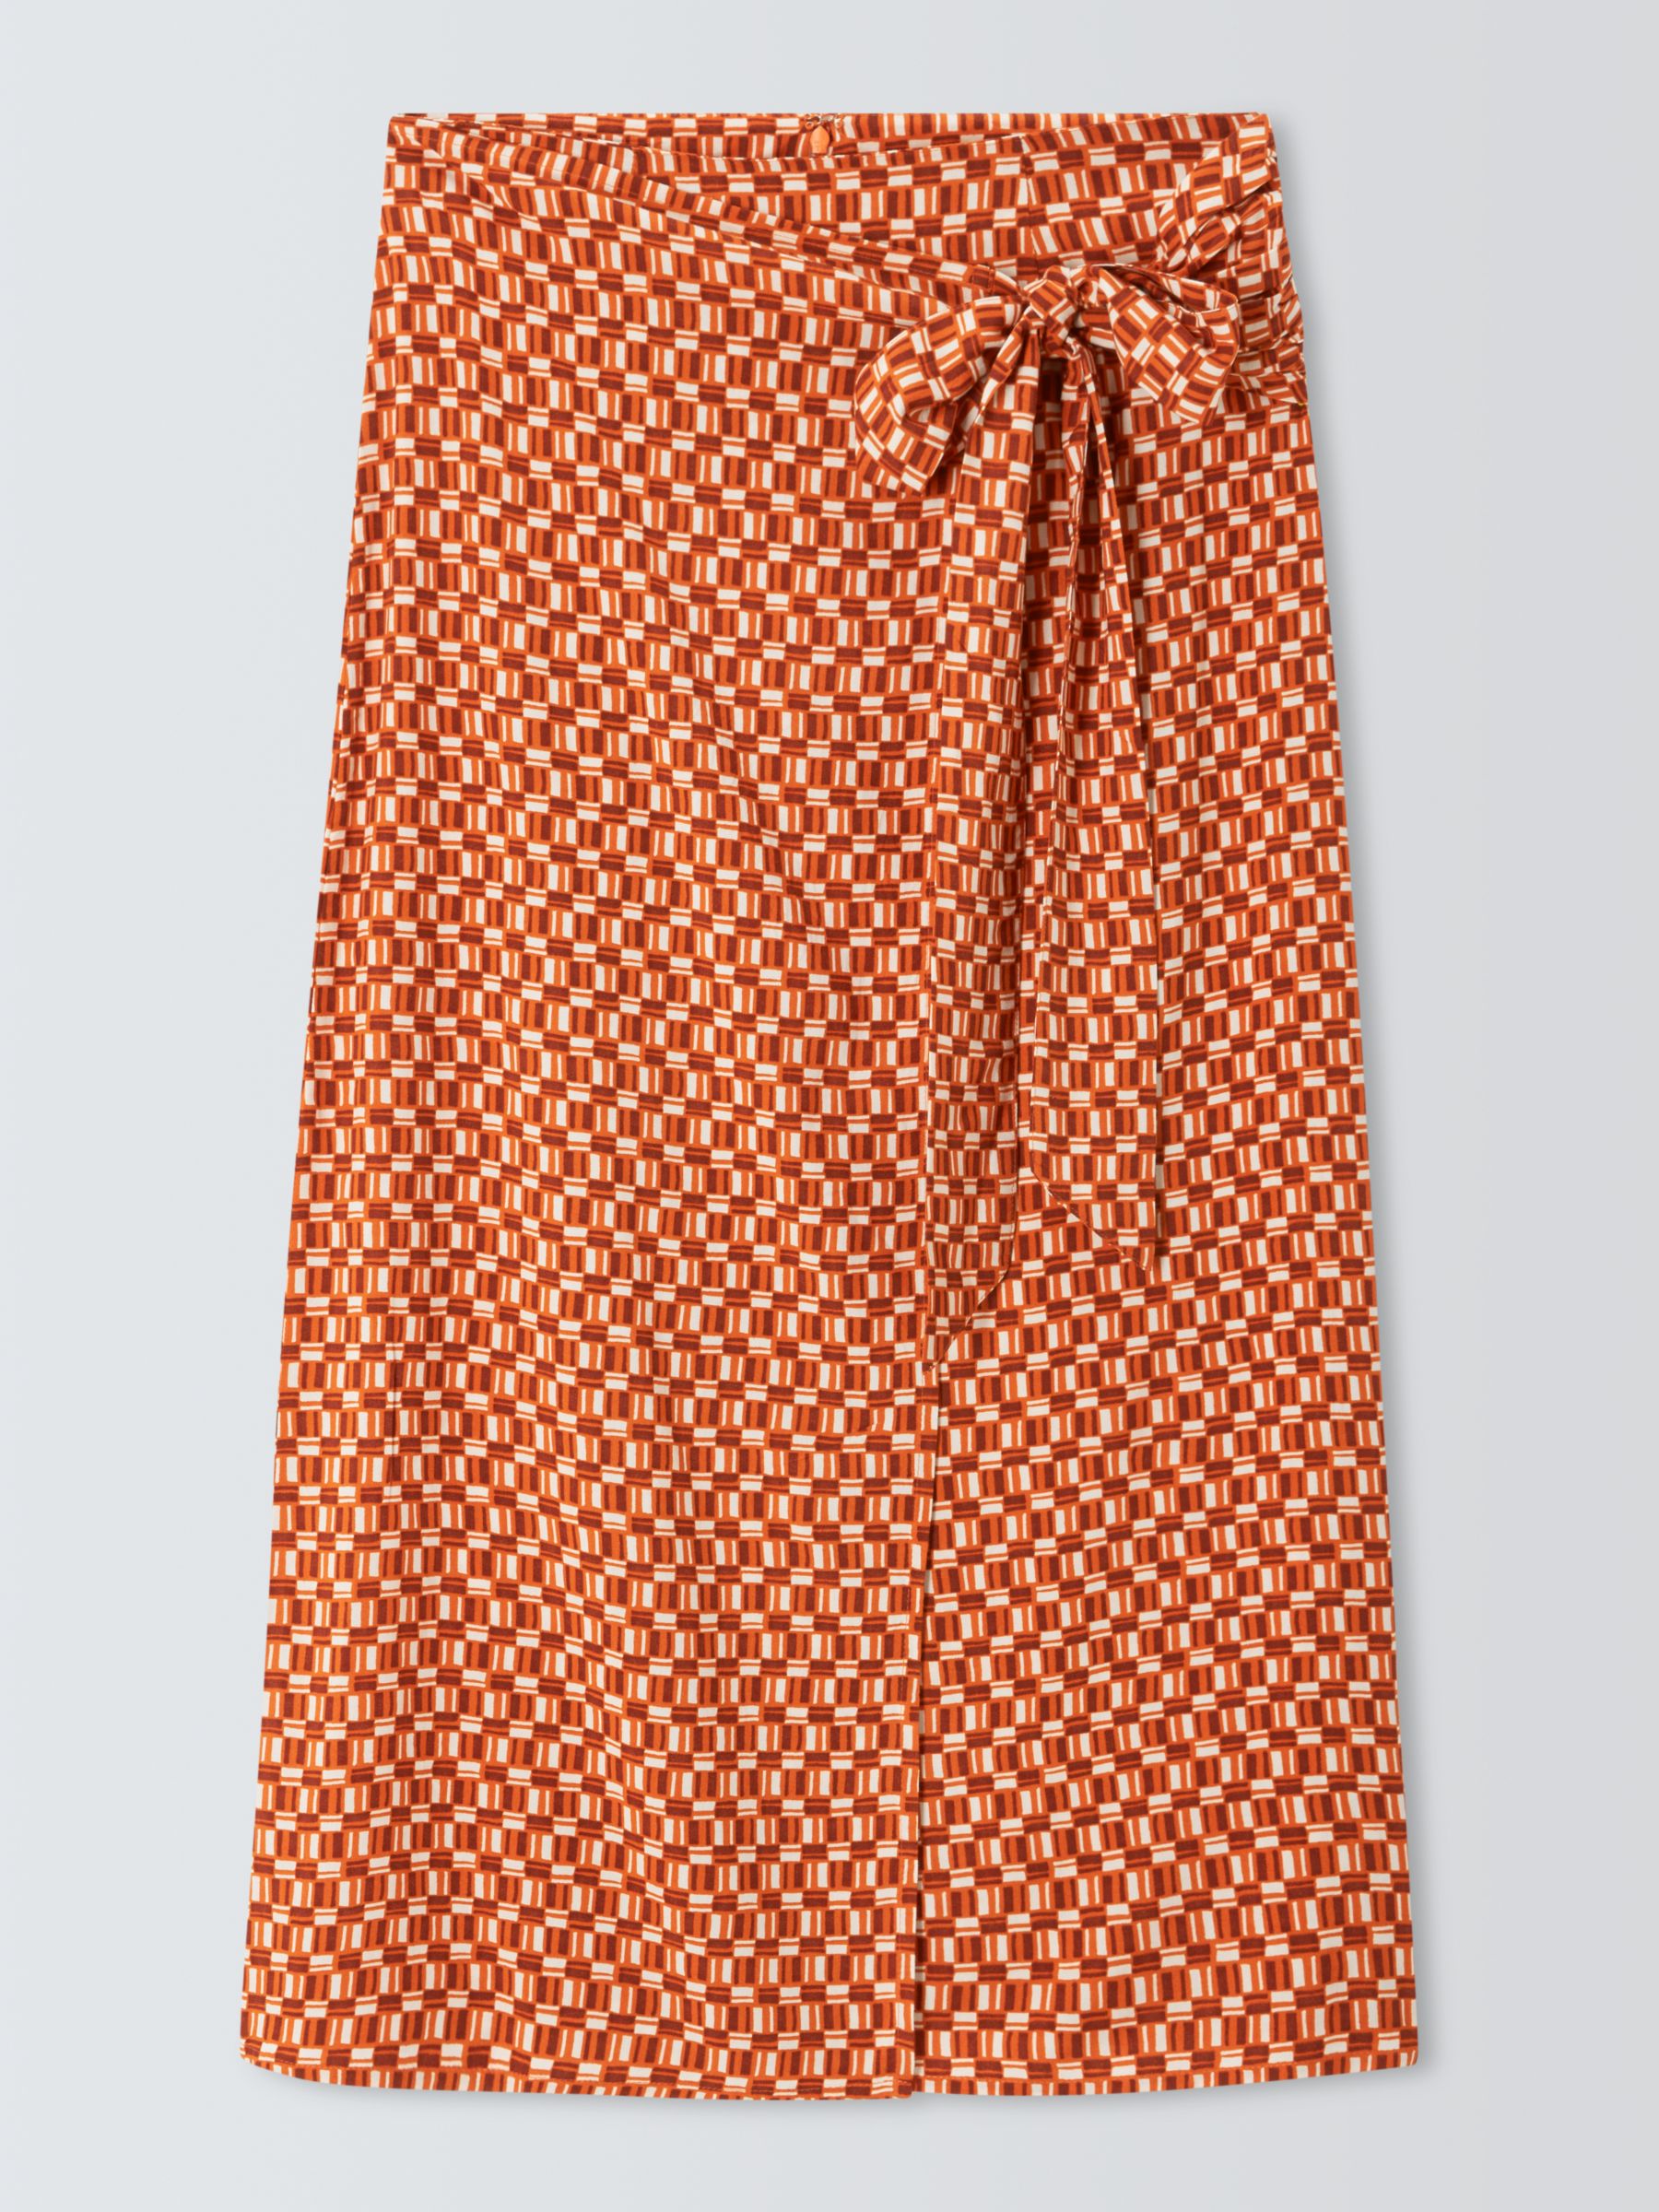 John Lewis ANYDAY Geometric Sarong Skirt, Orange, 8